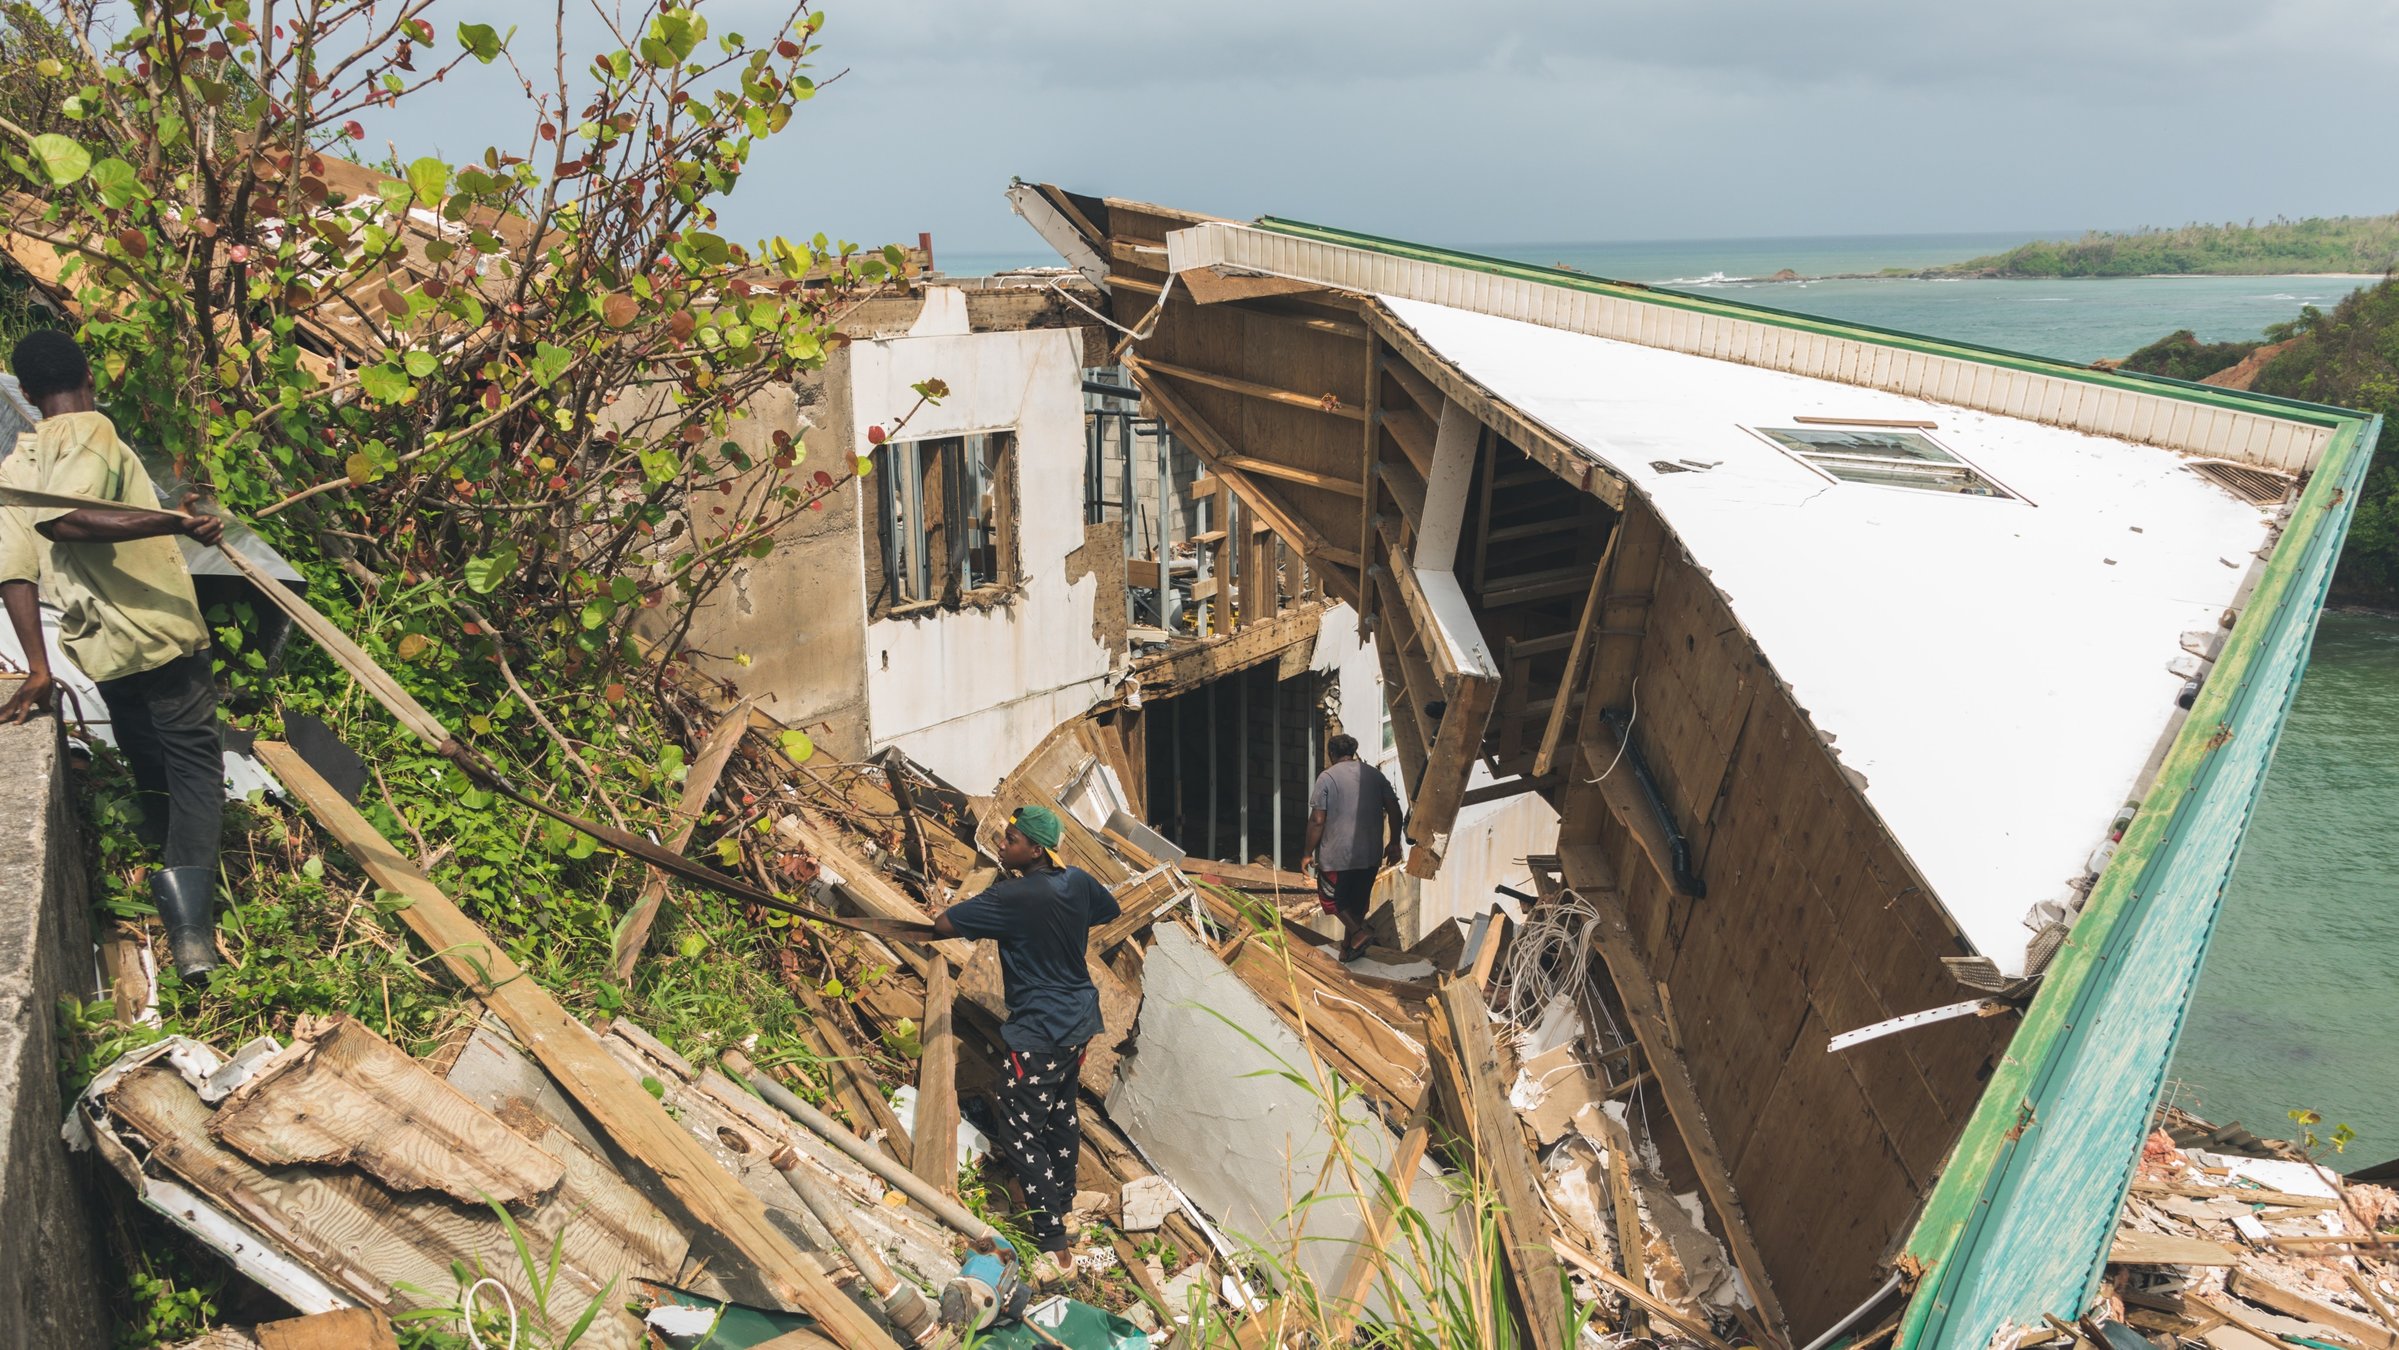 "planet e.: Karibische Sturmfront - Wie der Inselstaat Dominica dem Klimawandel trotzt": Mann in den Trümmern eines Hauses nach dem Hurrikan an einer Küste.